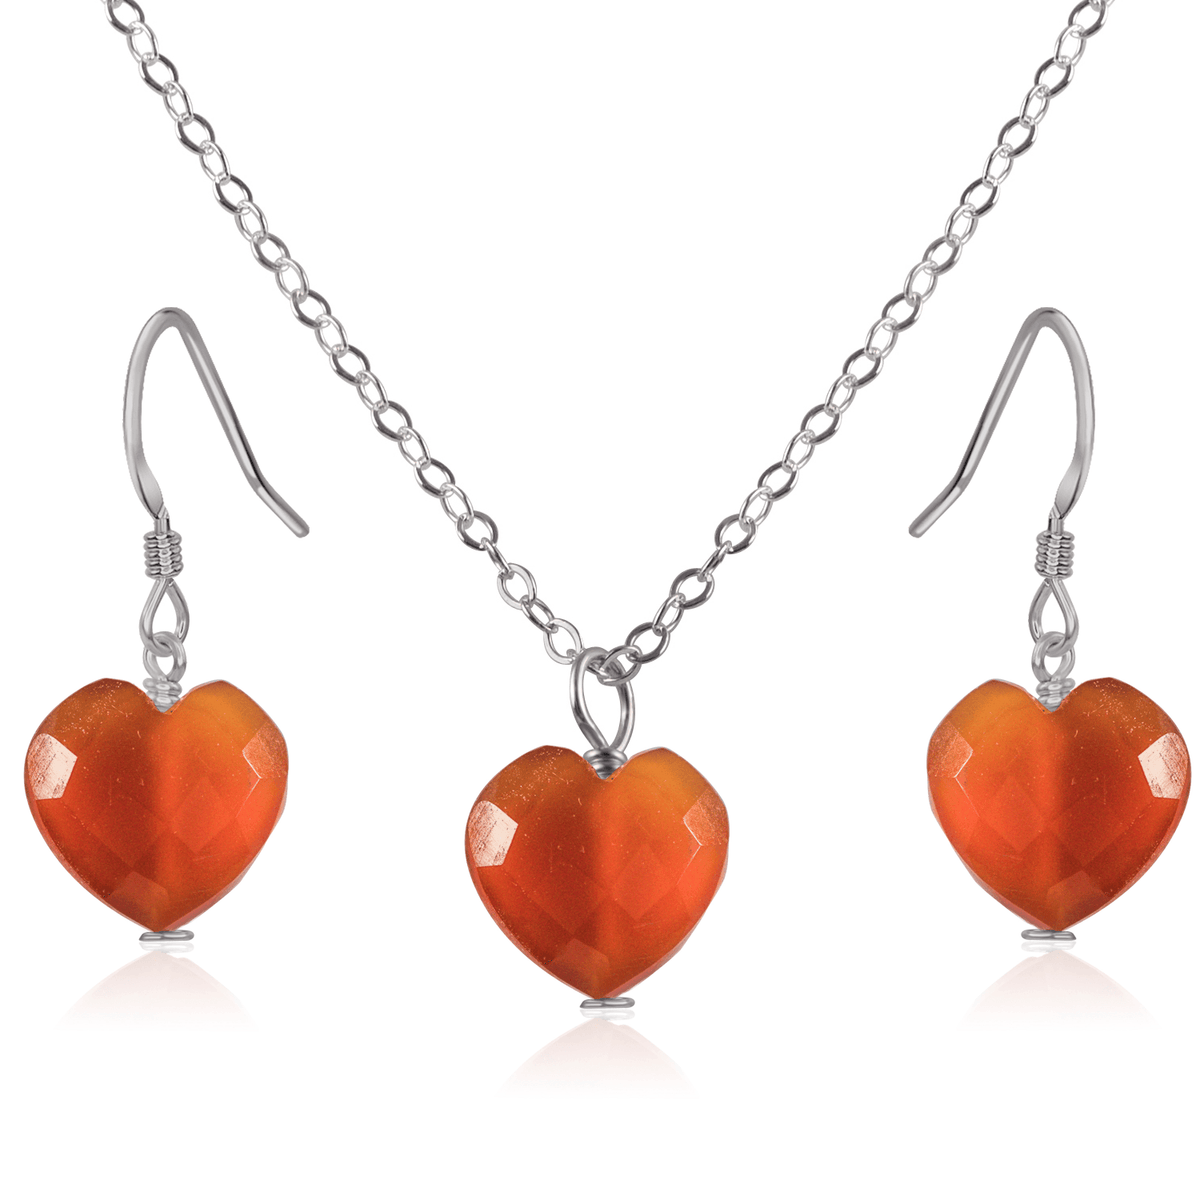 Carnelian Crystal Heart Jewellery Set - Carnelian Crystal Heart Jewellery Set - Stainless Steel / Cable / Necklace & Earrings - Luna Tide Handmade Crystal Jewellery